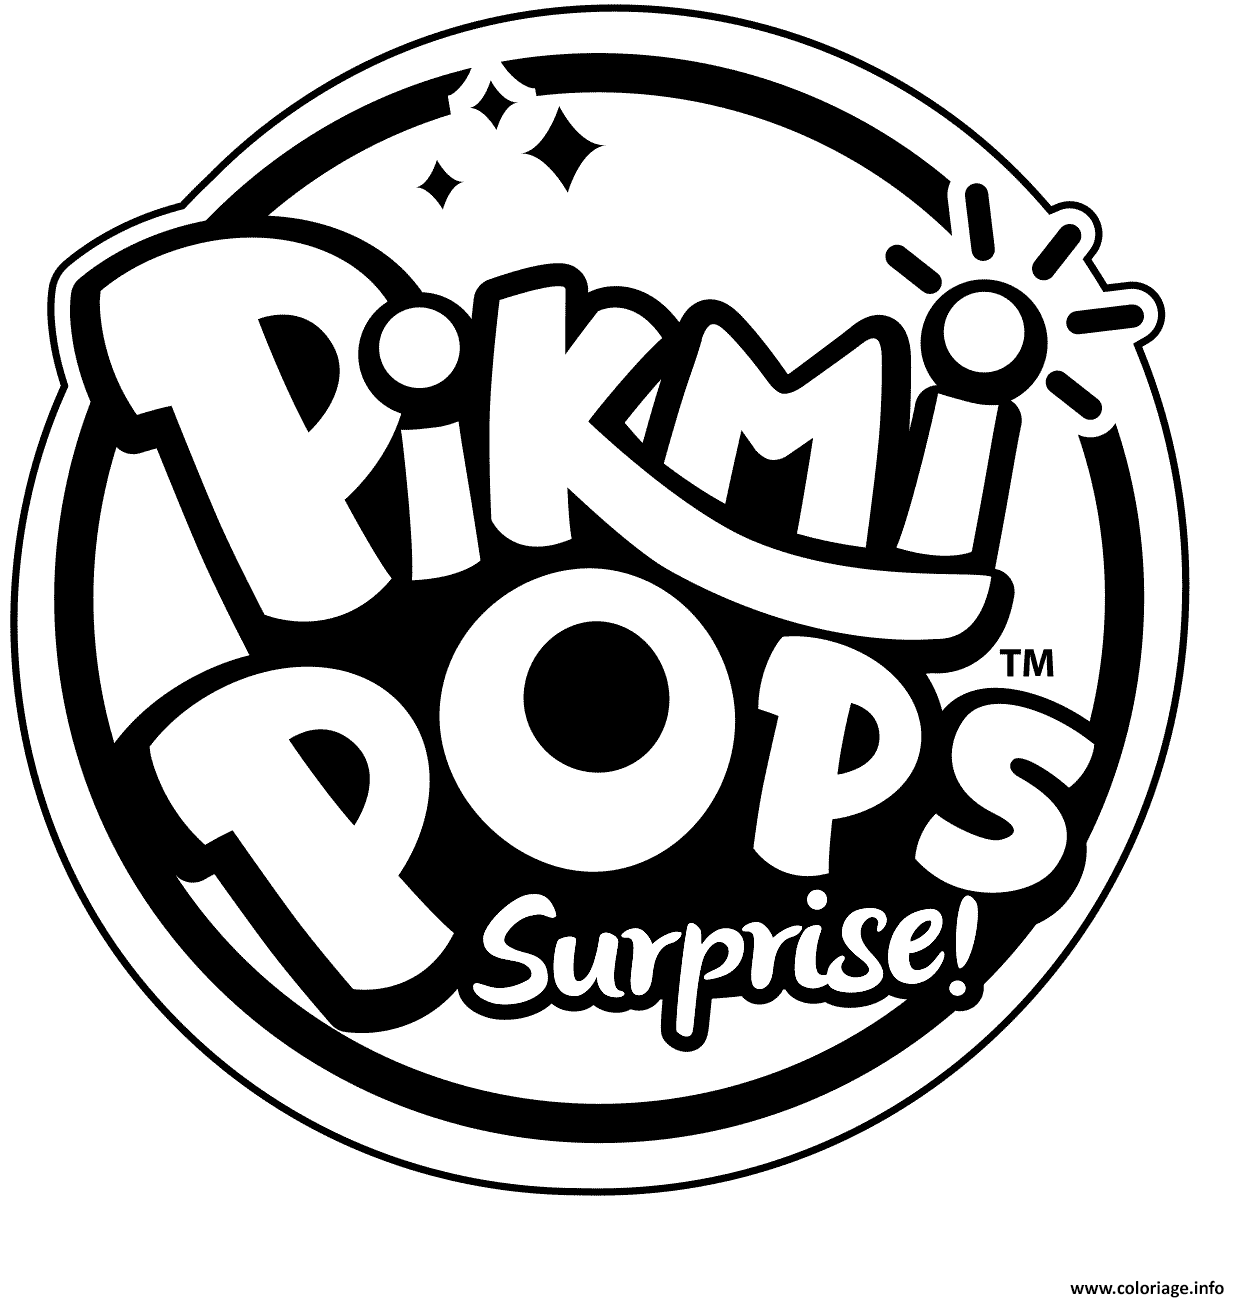 Coloriage Pikmi Pops Logo To Color Dessin à Imprimer